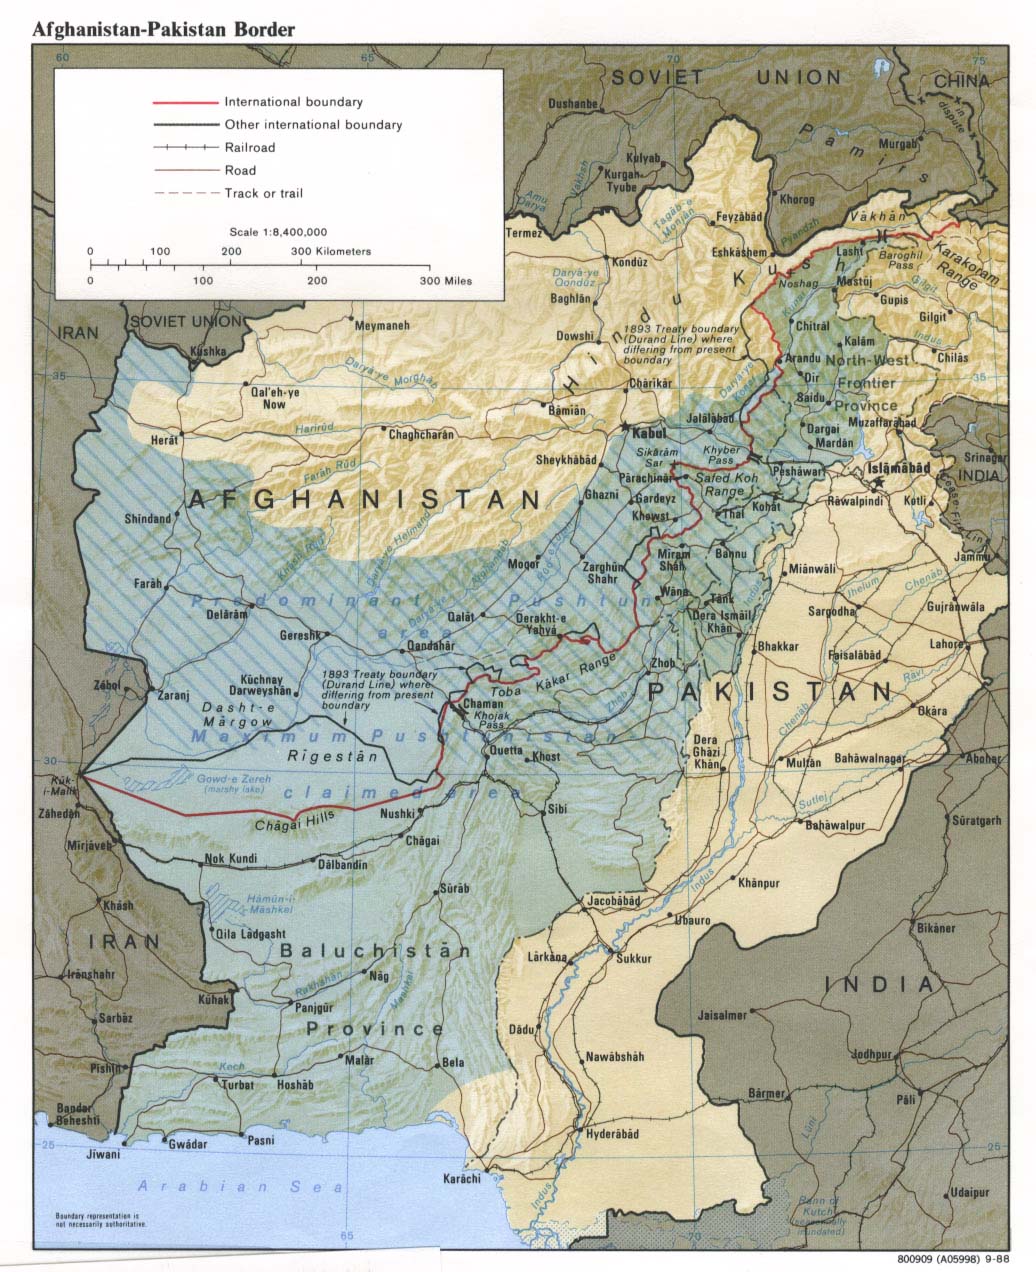 afghan_paki_border_rel88.jpg